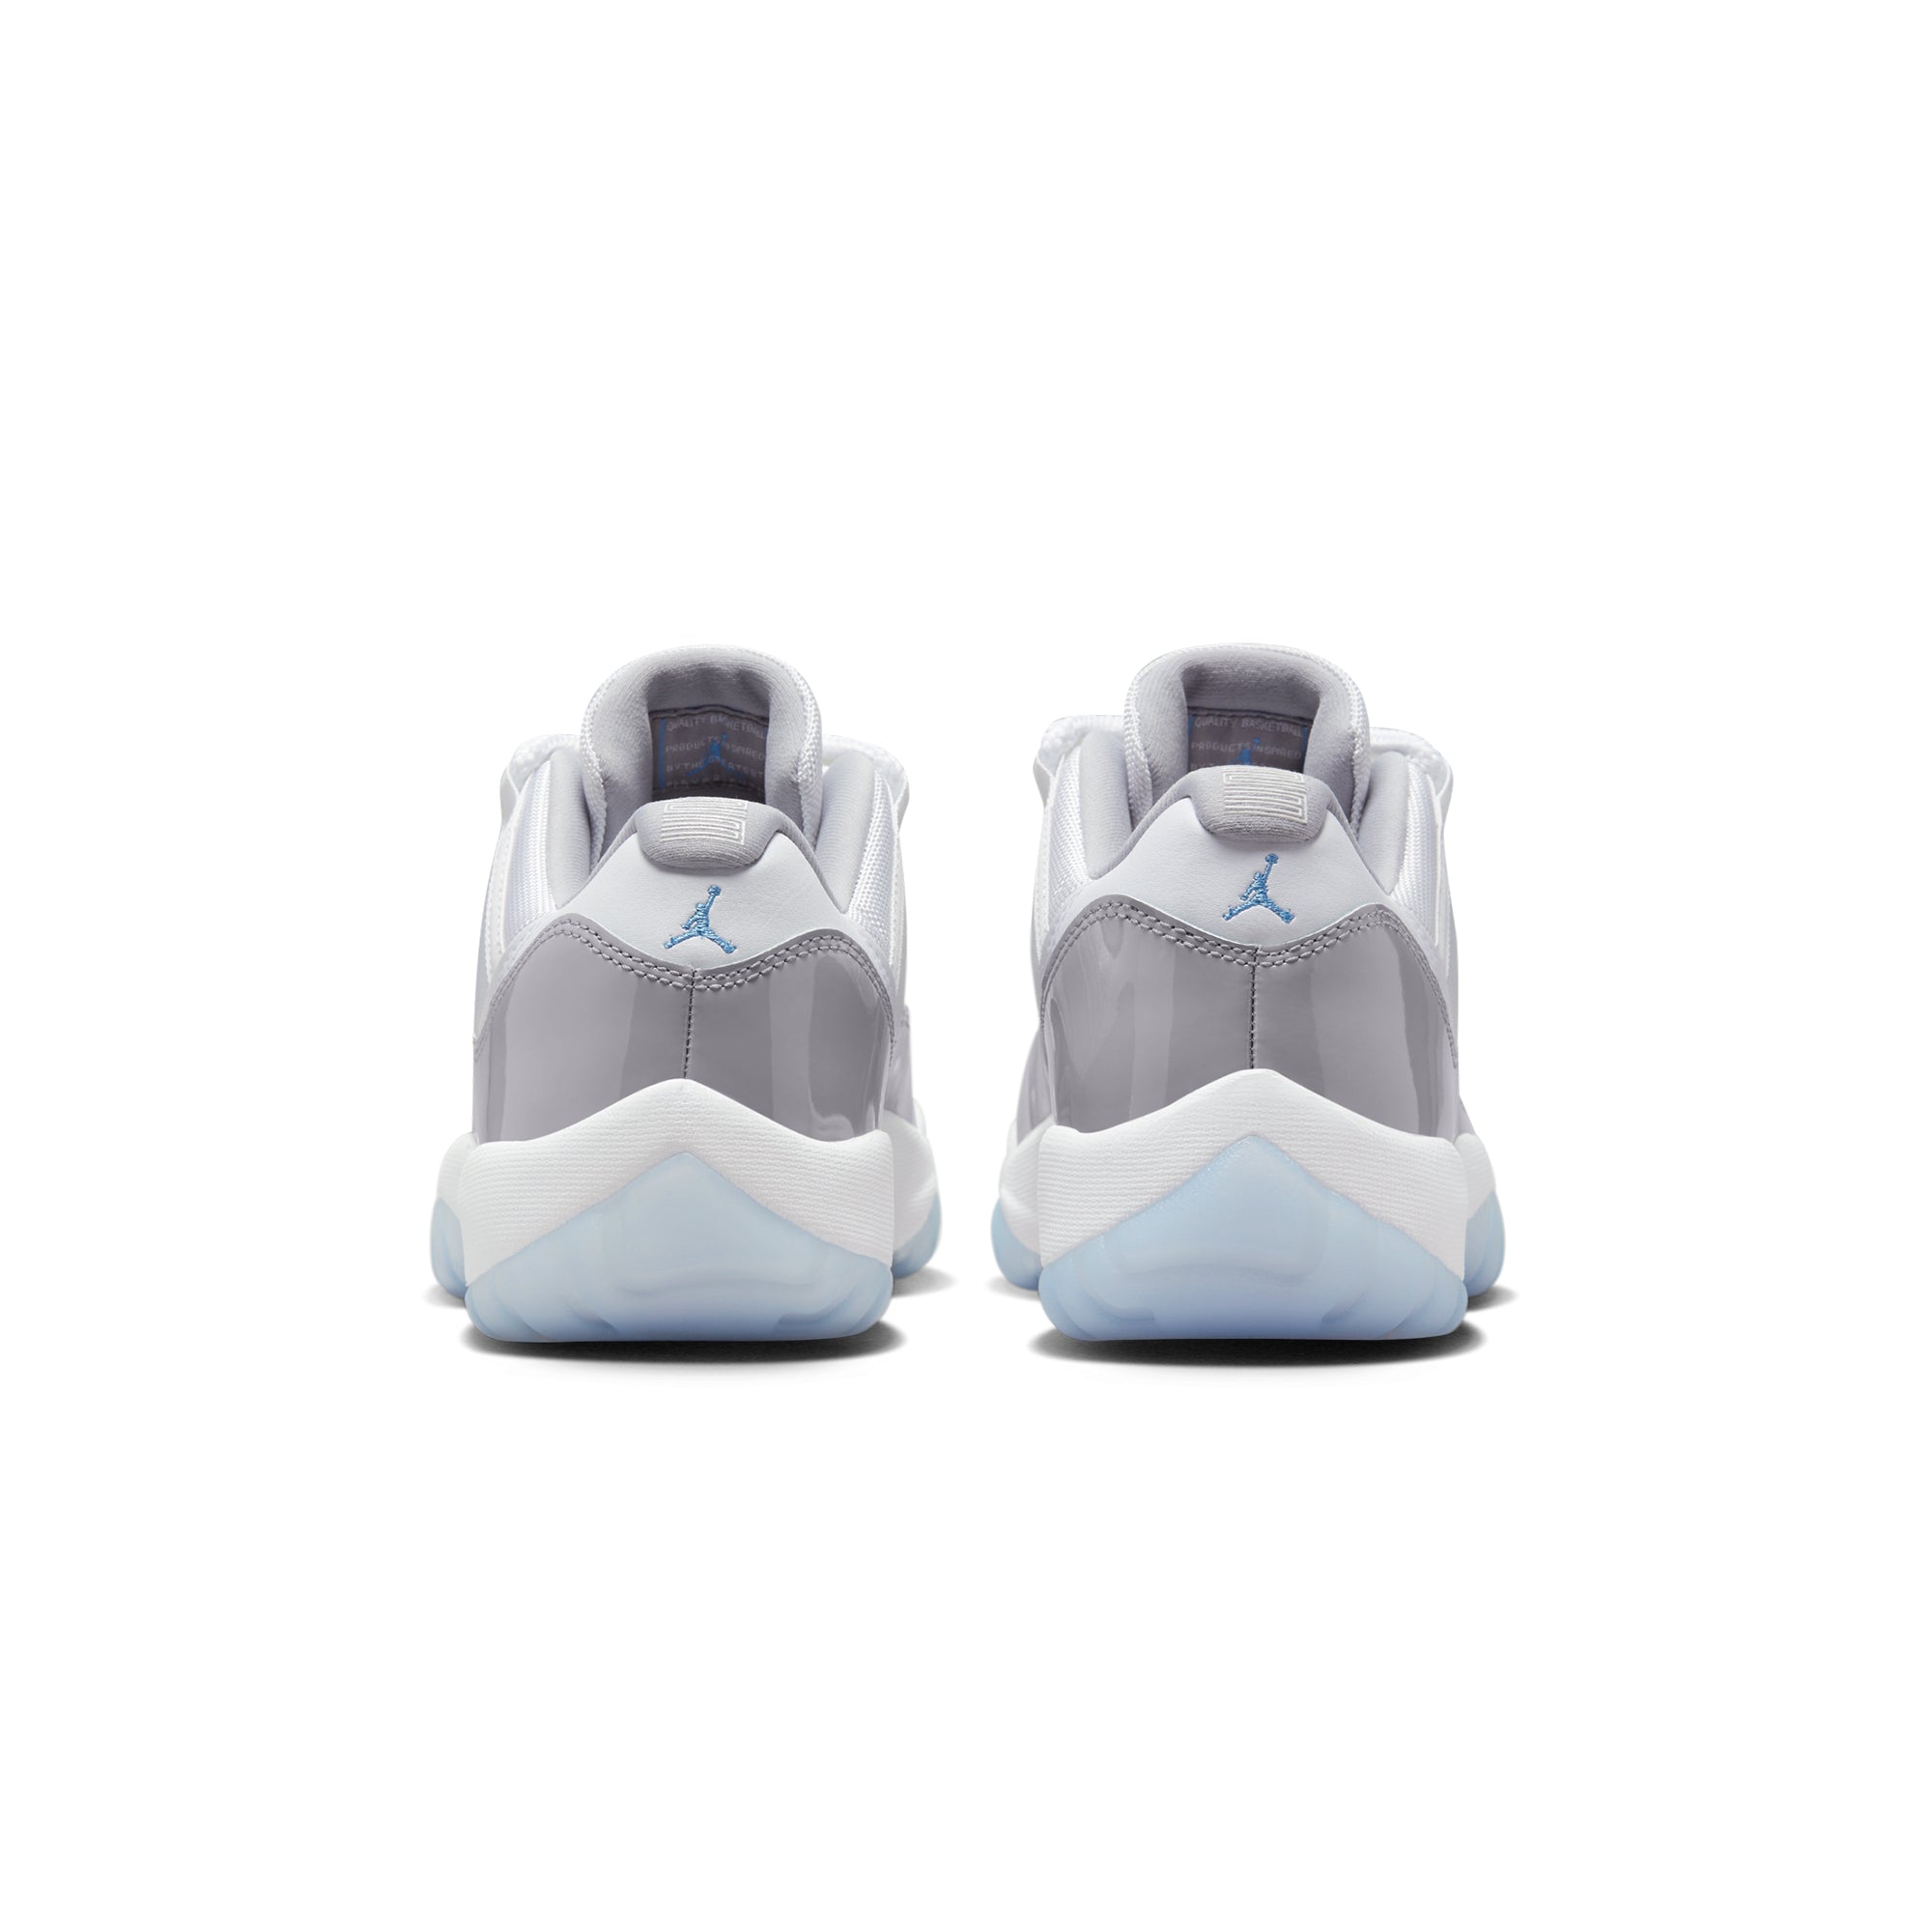 Air Jordan 11 Mens Retro Low Shoes - TJ Outlet